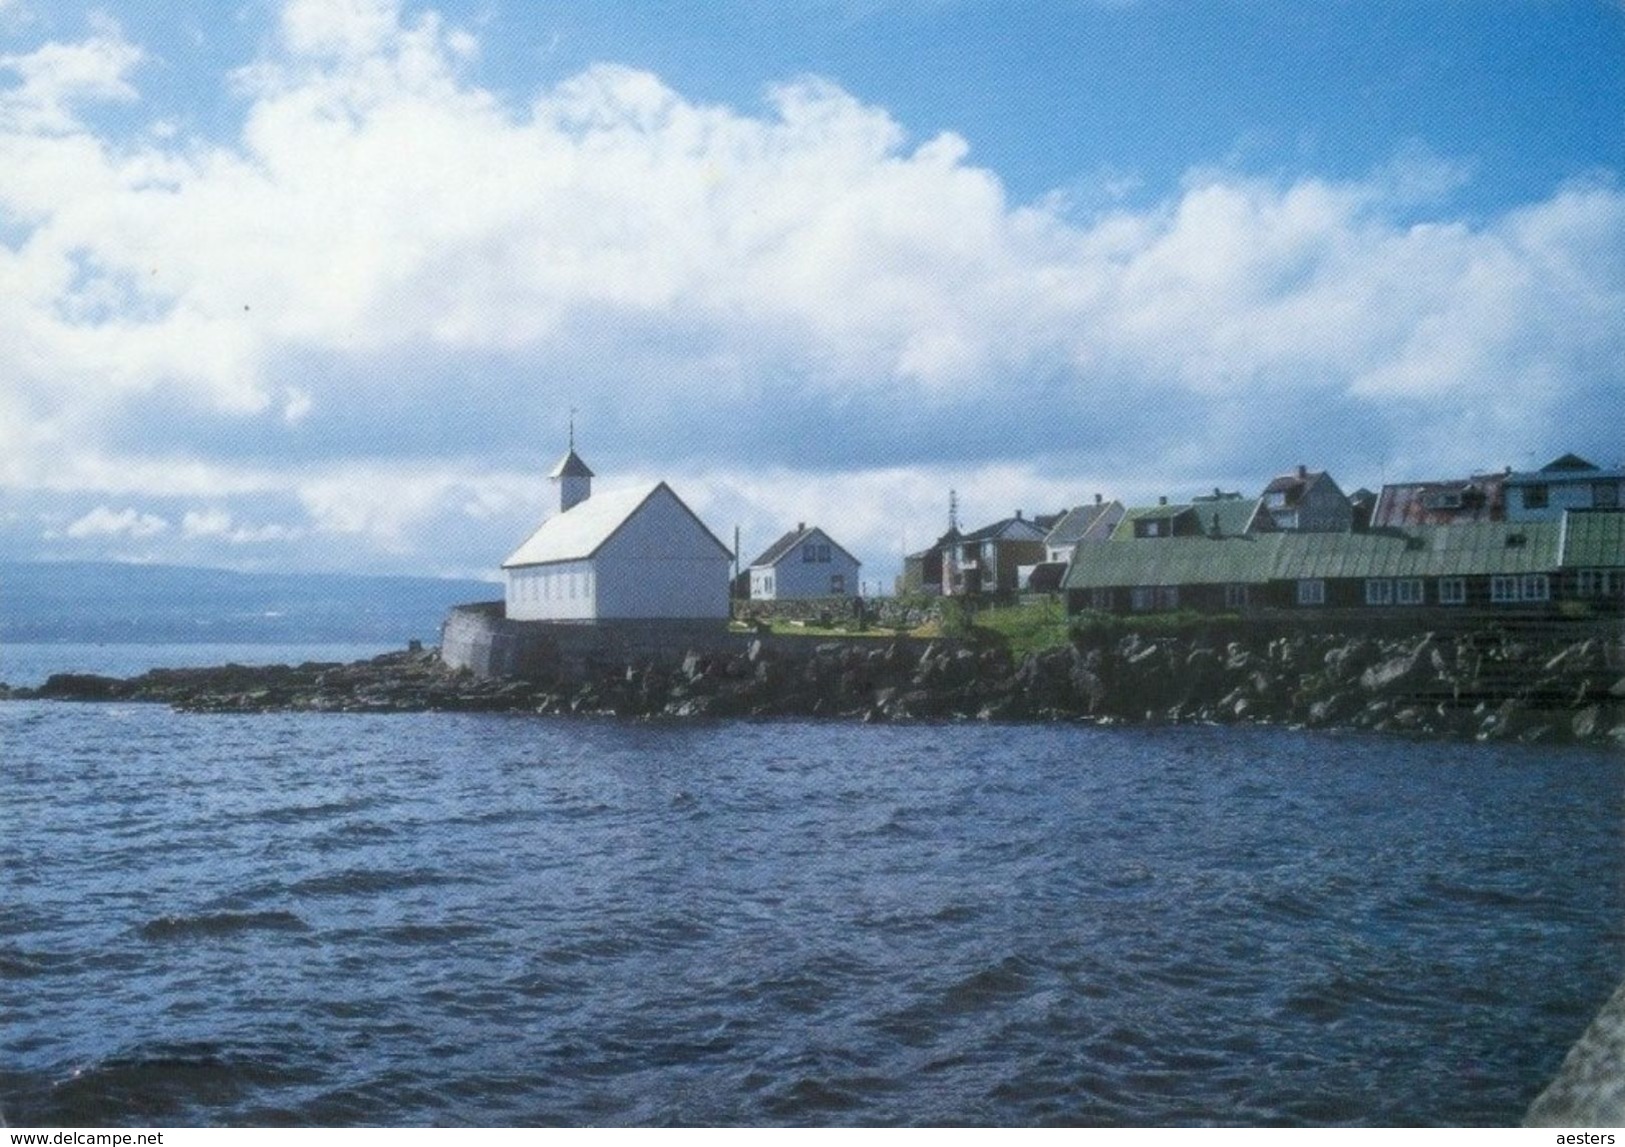 Føroyar 1990; Nólsoy Oyggj (island) - Not Circulated. (Postverk Føroya) - Faroe Islands